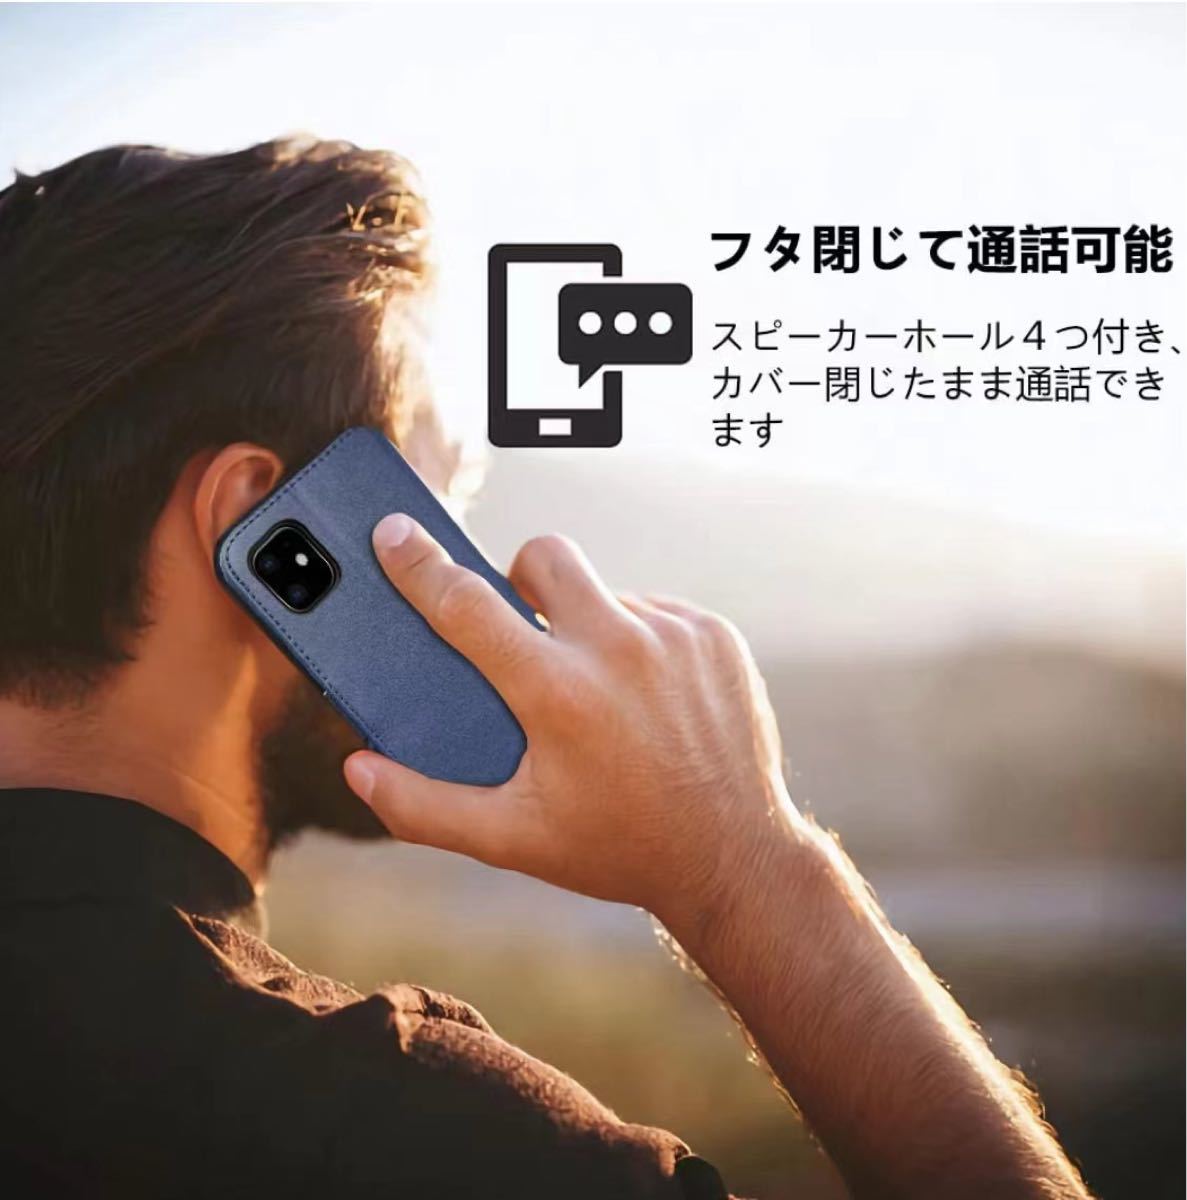 iPhone 12mini 手帳型 ケース スタンド機能 カード入れ  ネイビー (5.4 インチ) ストラップホール付き